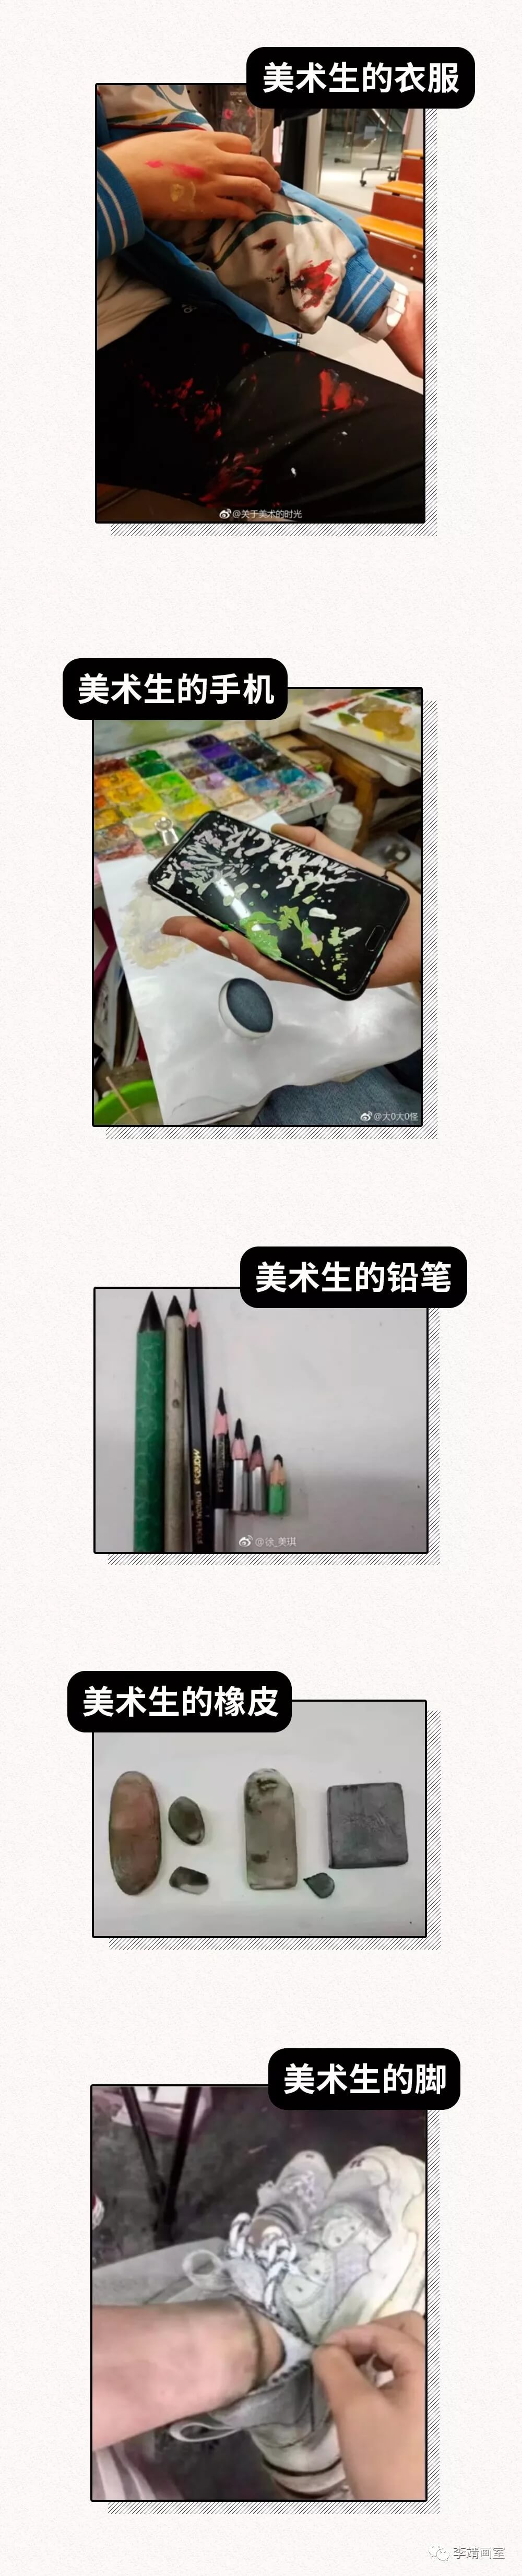 北京美术高考,北京画室,北京李靖画室,泪目，做一个美术生真的太惨啦！！07